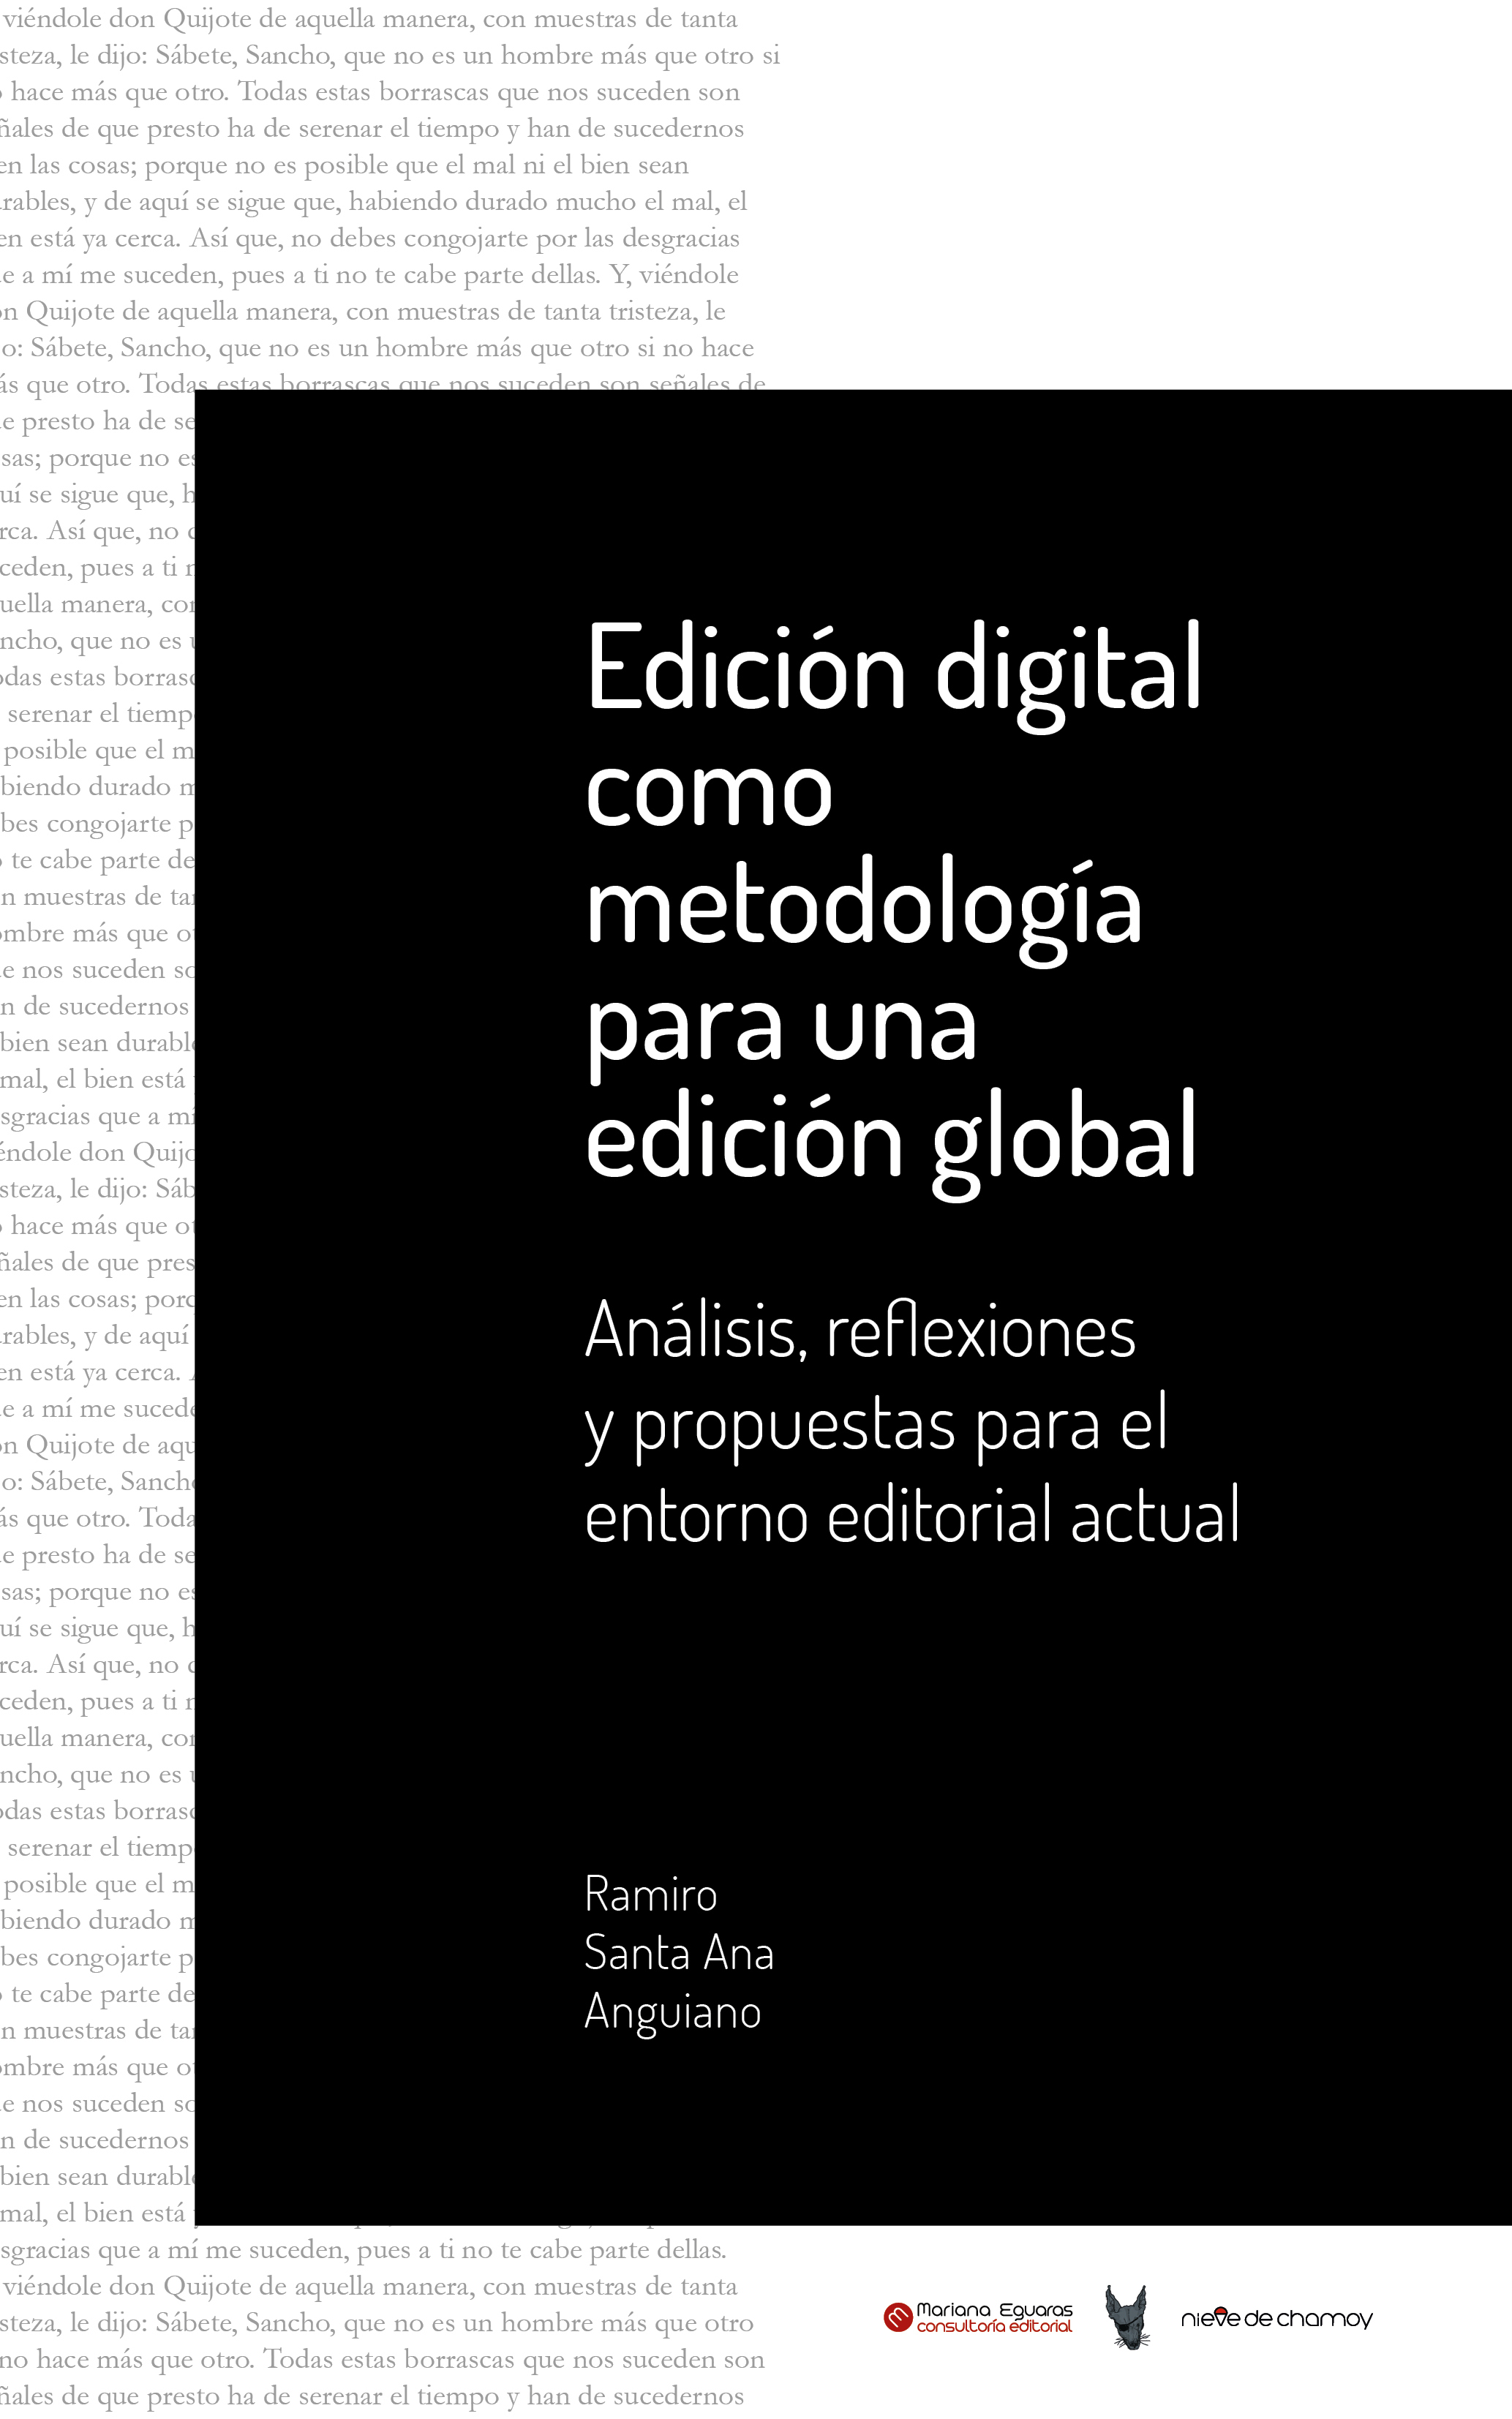 Edición digital como metodología para una edición global Análisis reflexiones - photo 1